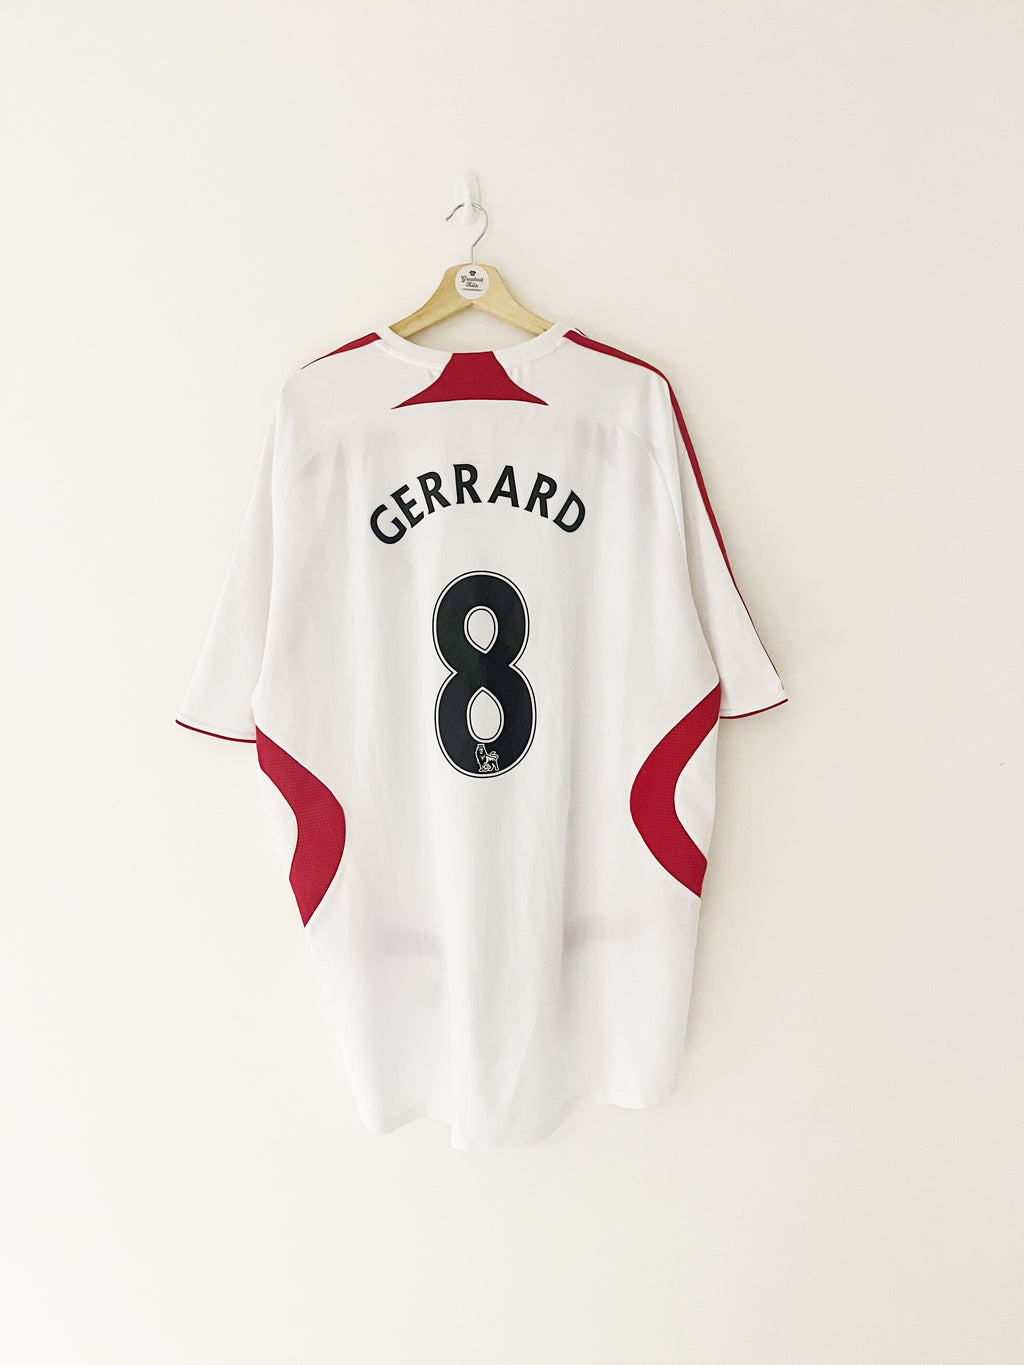 Maillot extérieur Liverpool 2007/08 Gerrard #8 (XXL) 7/10